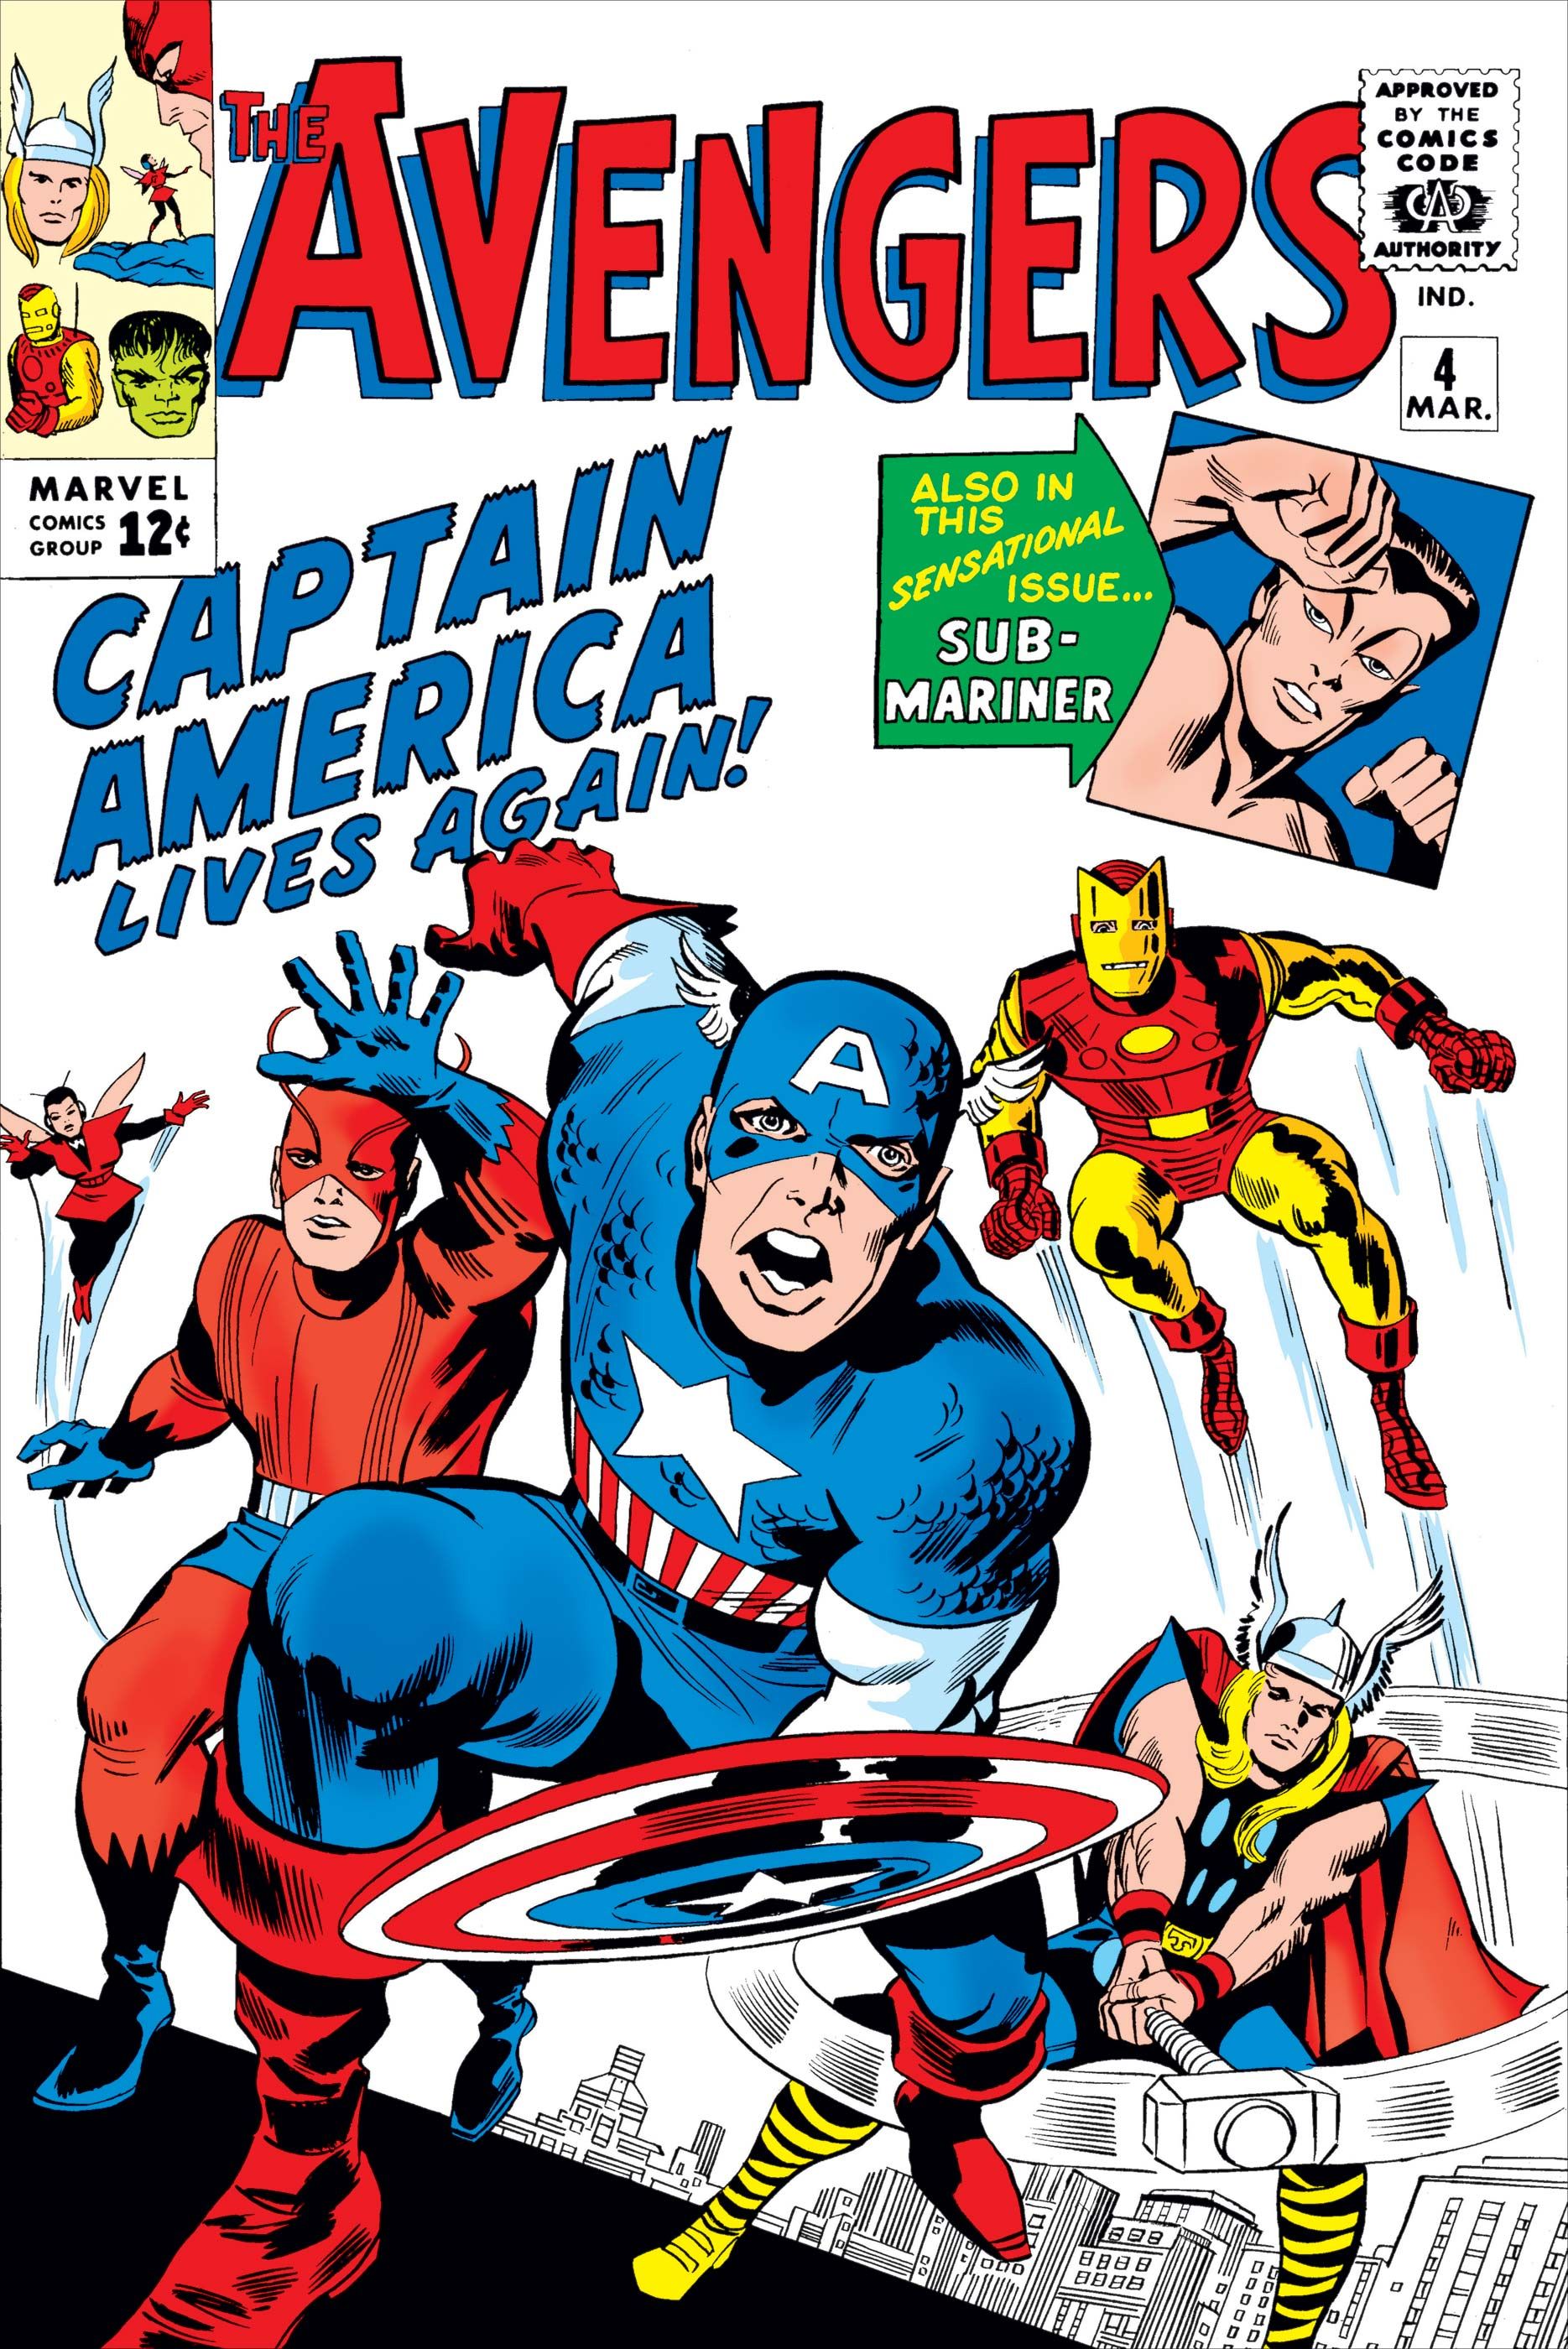 Las 10 mejores portadas de los cómics de los Vengadores de los años 60,  clasificadas | Cultture